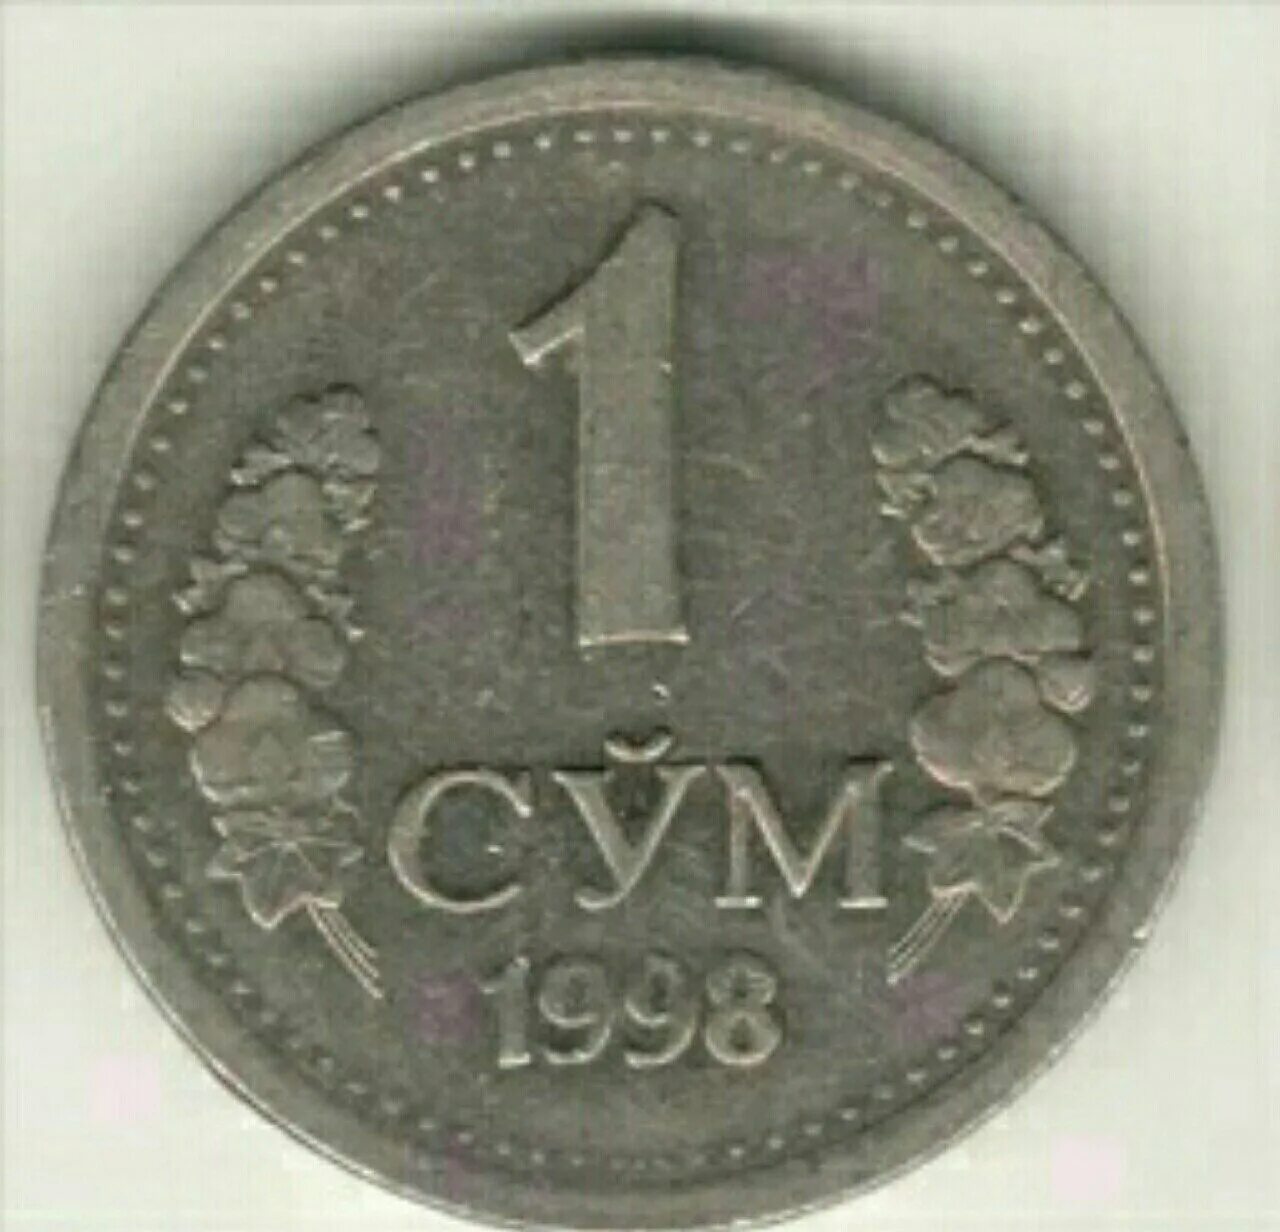 Маленькая сум. Монета 1 сум Узбекистан 1998 год. Сум (денежная единица). 1 Узбекский сум. Узбекские монеты.